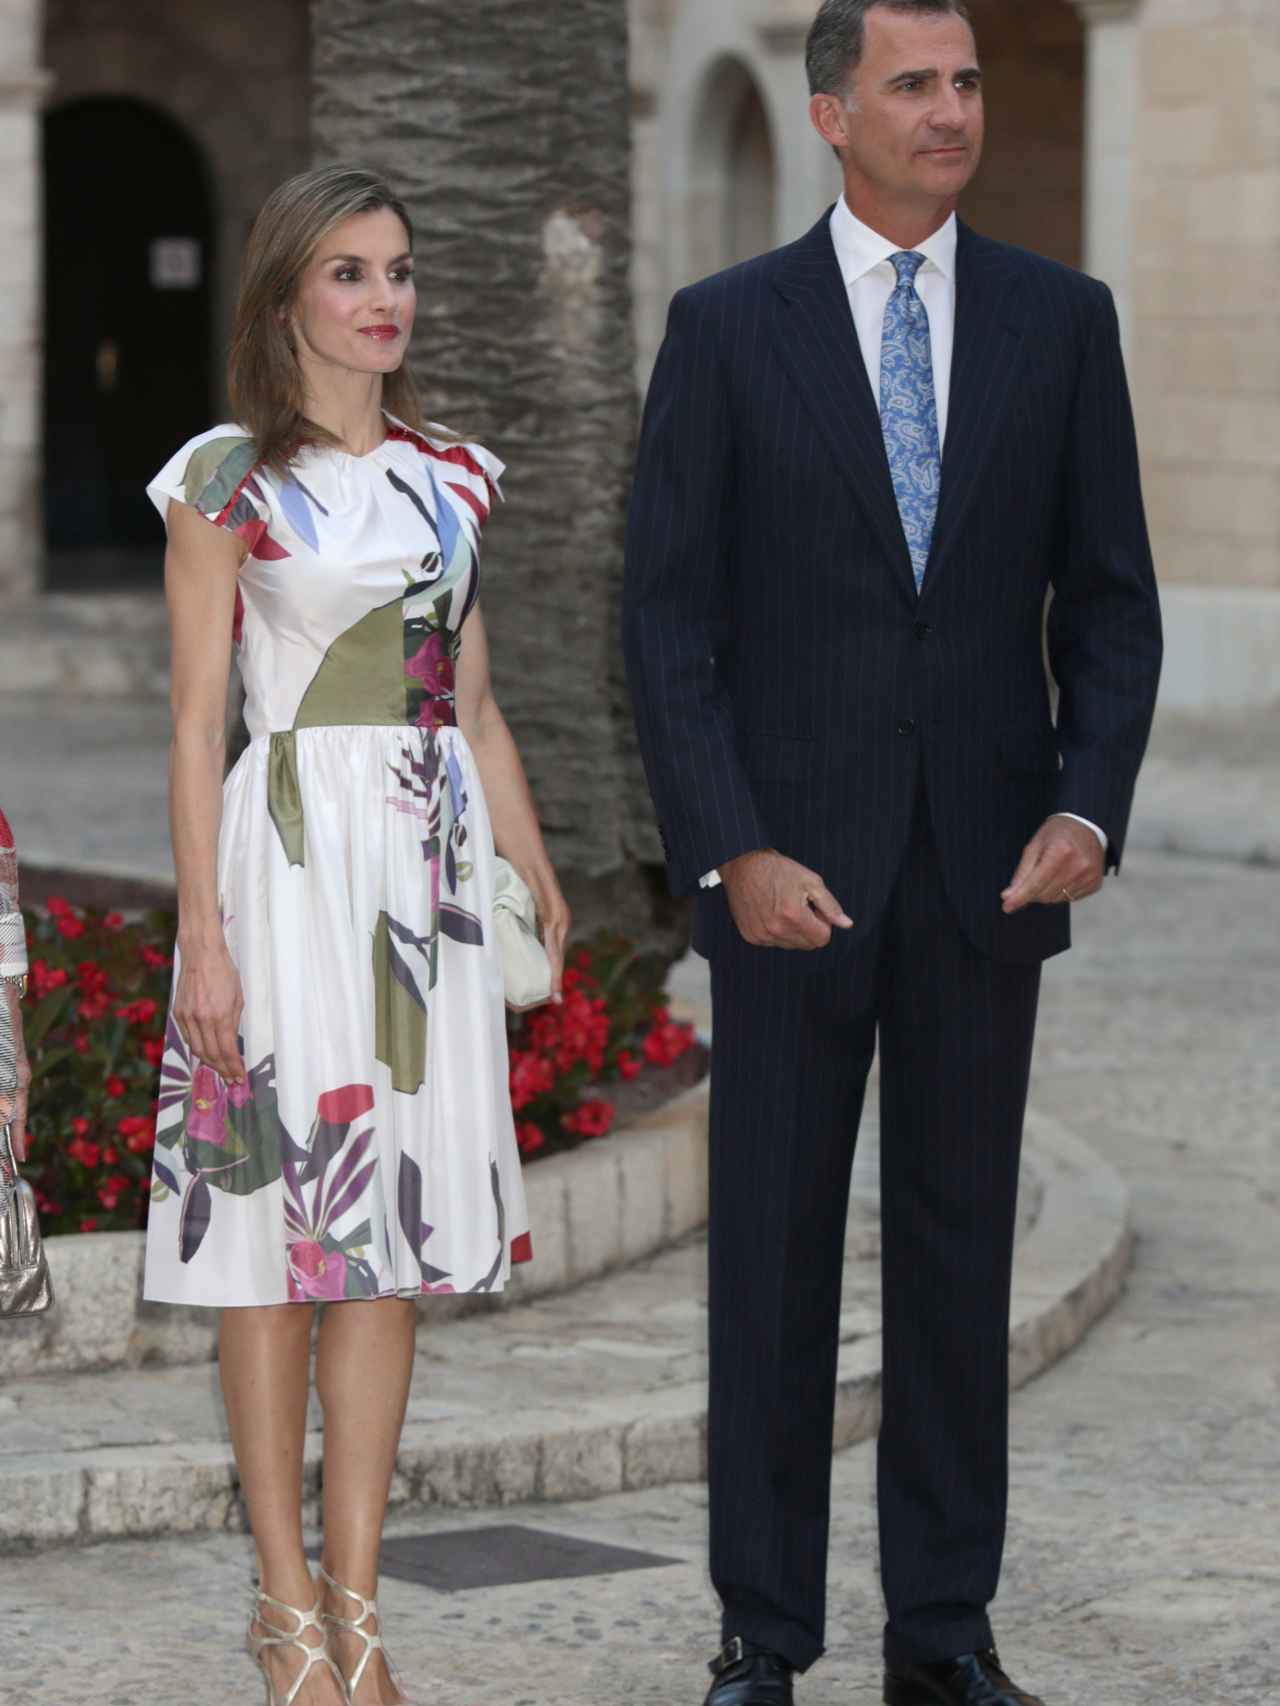 La Reina lució un veraniego vestido de inspiración floral y Rey un traje chaqueta de ralla diplomática y una corbata celeste con motivos florales